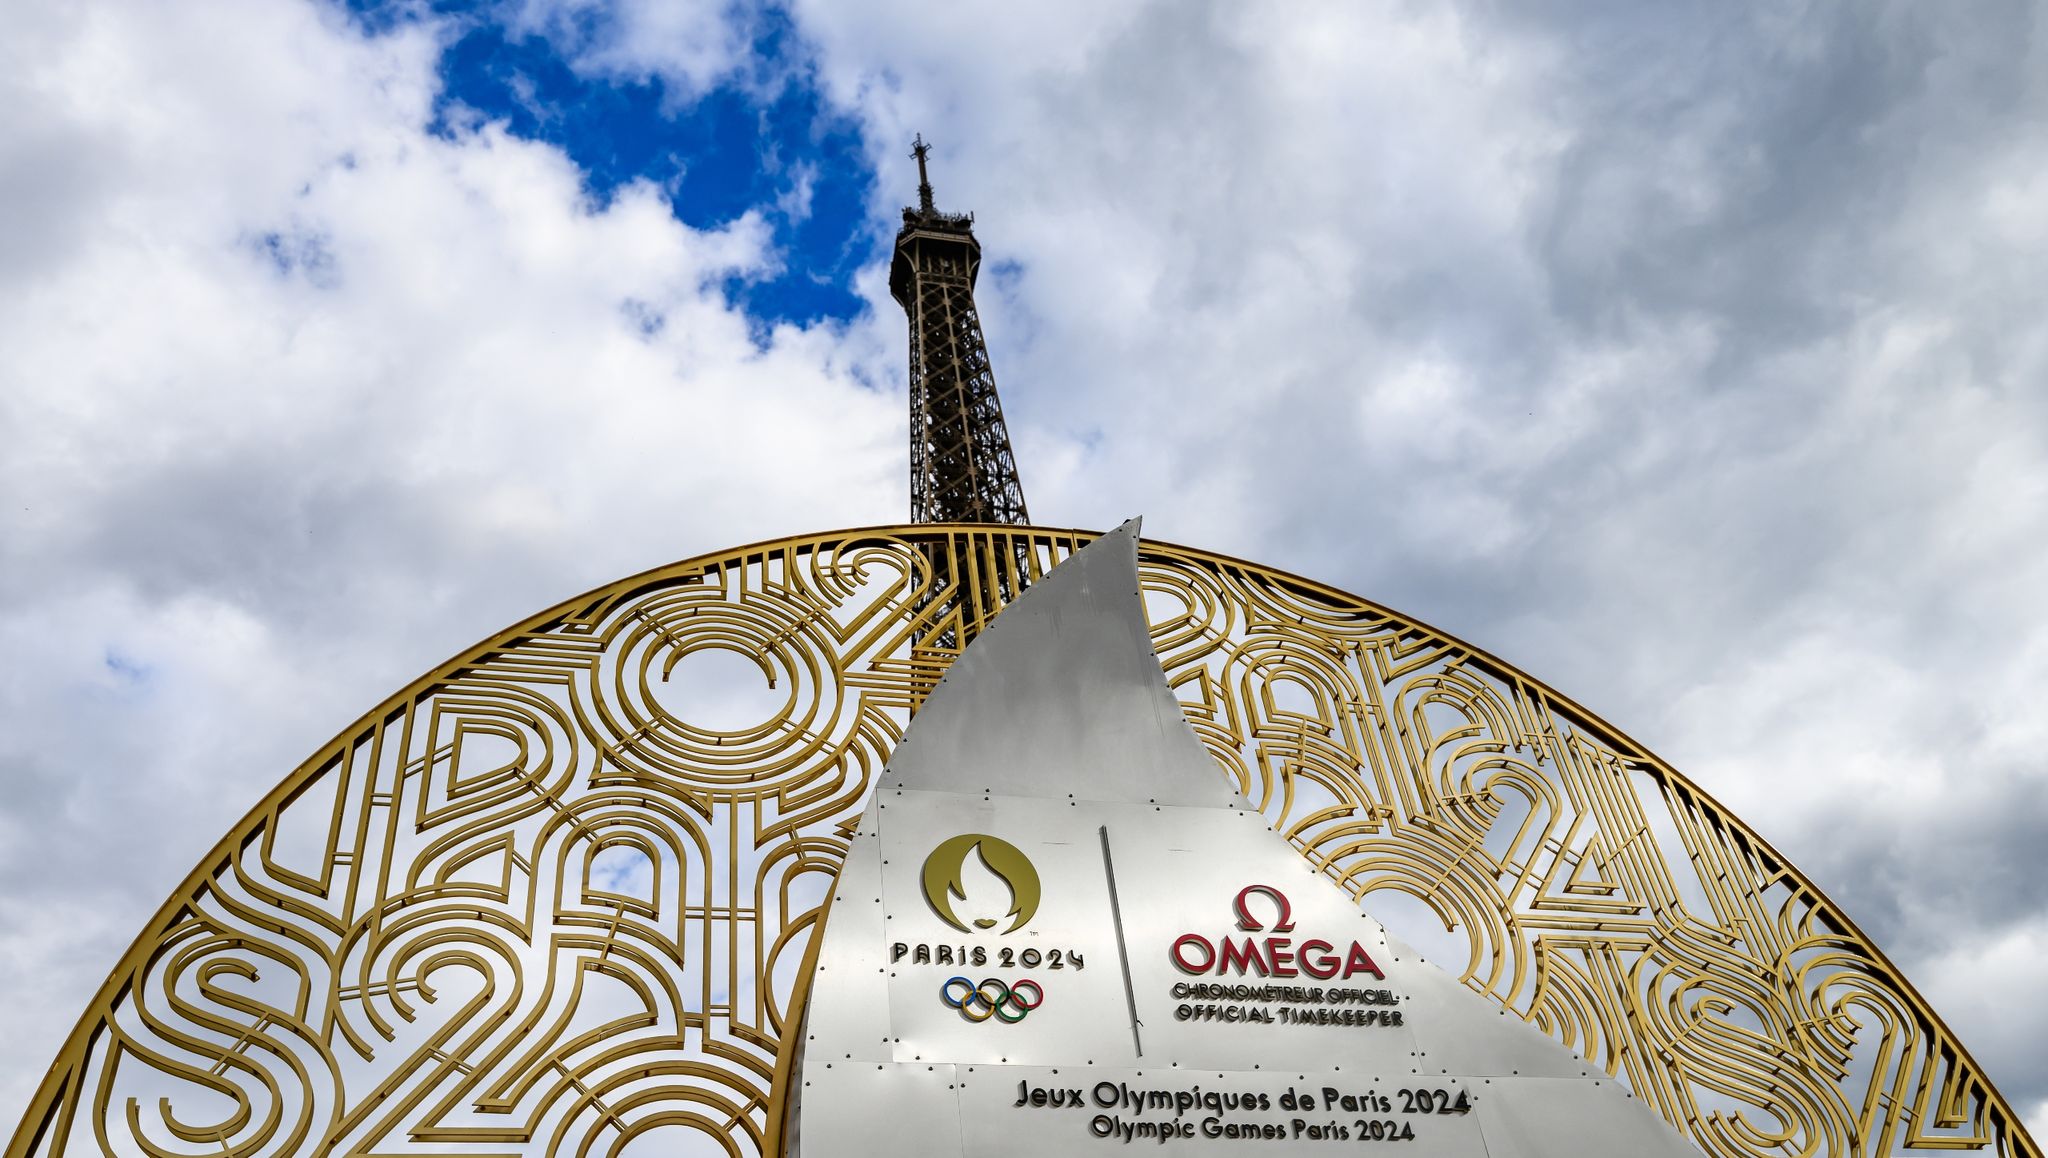 Mit oder ohne Ticket OlympiaTrip nach Paris planen Europe Online